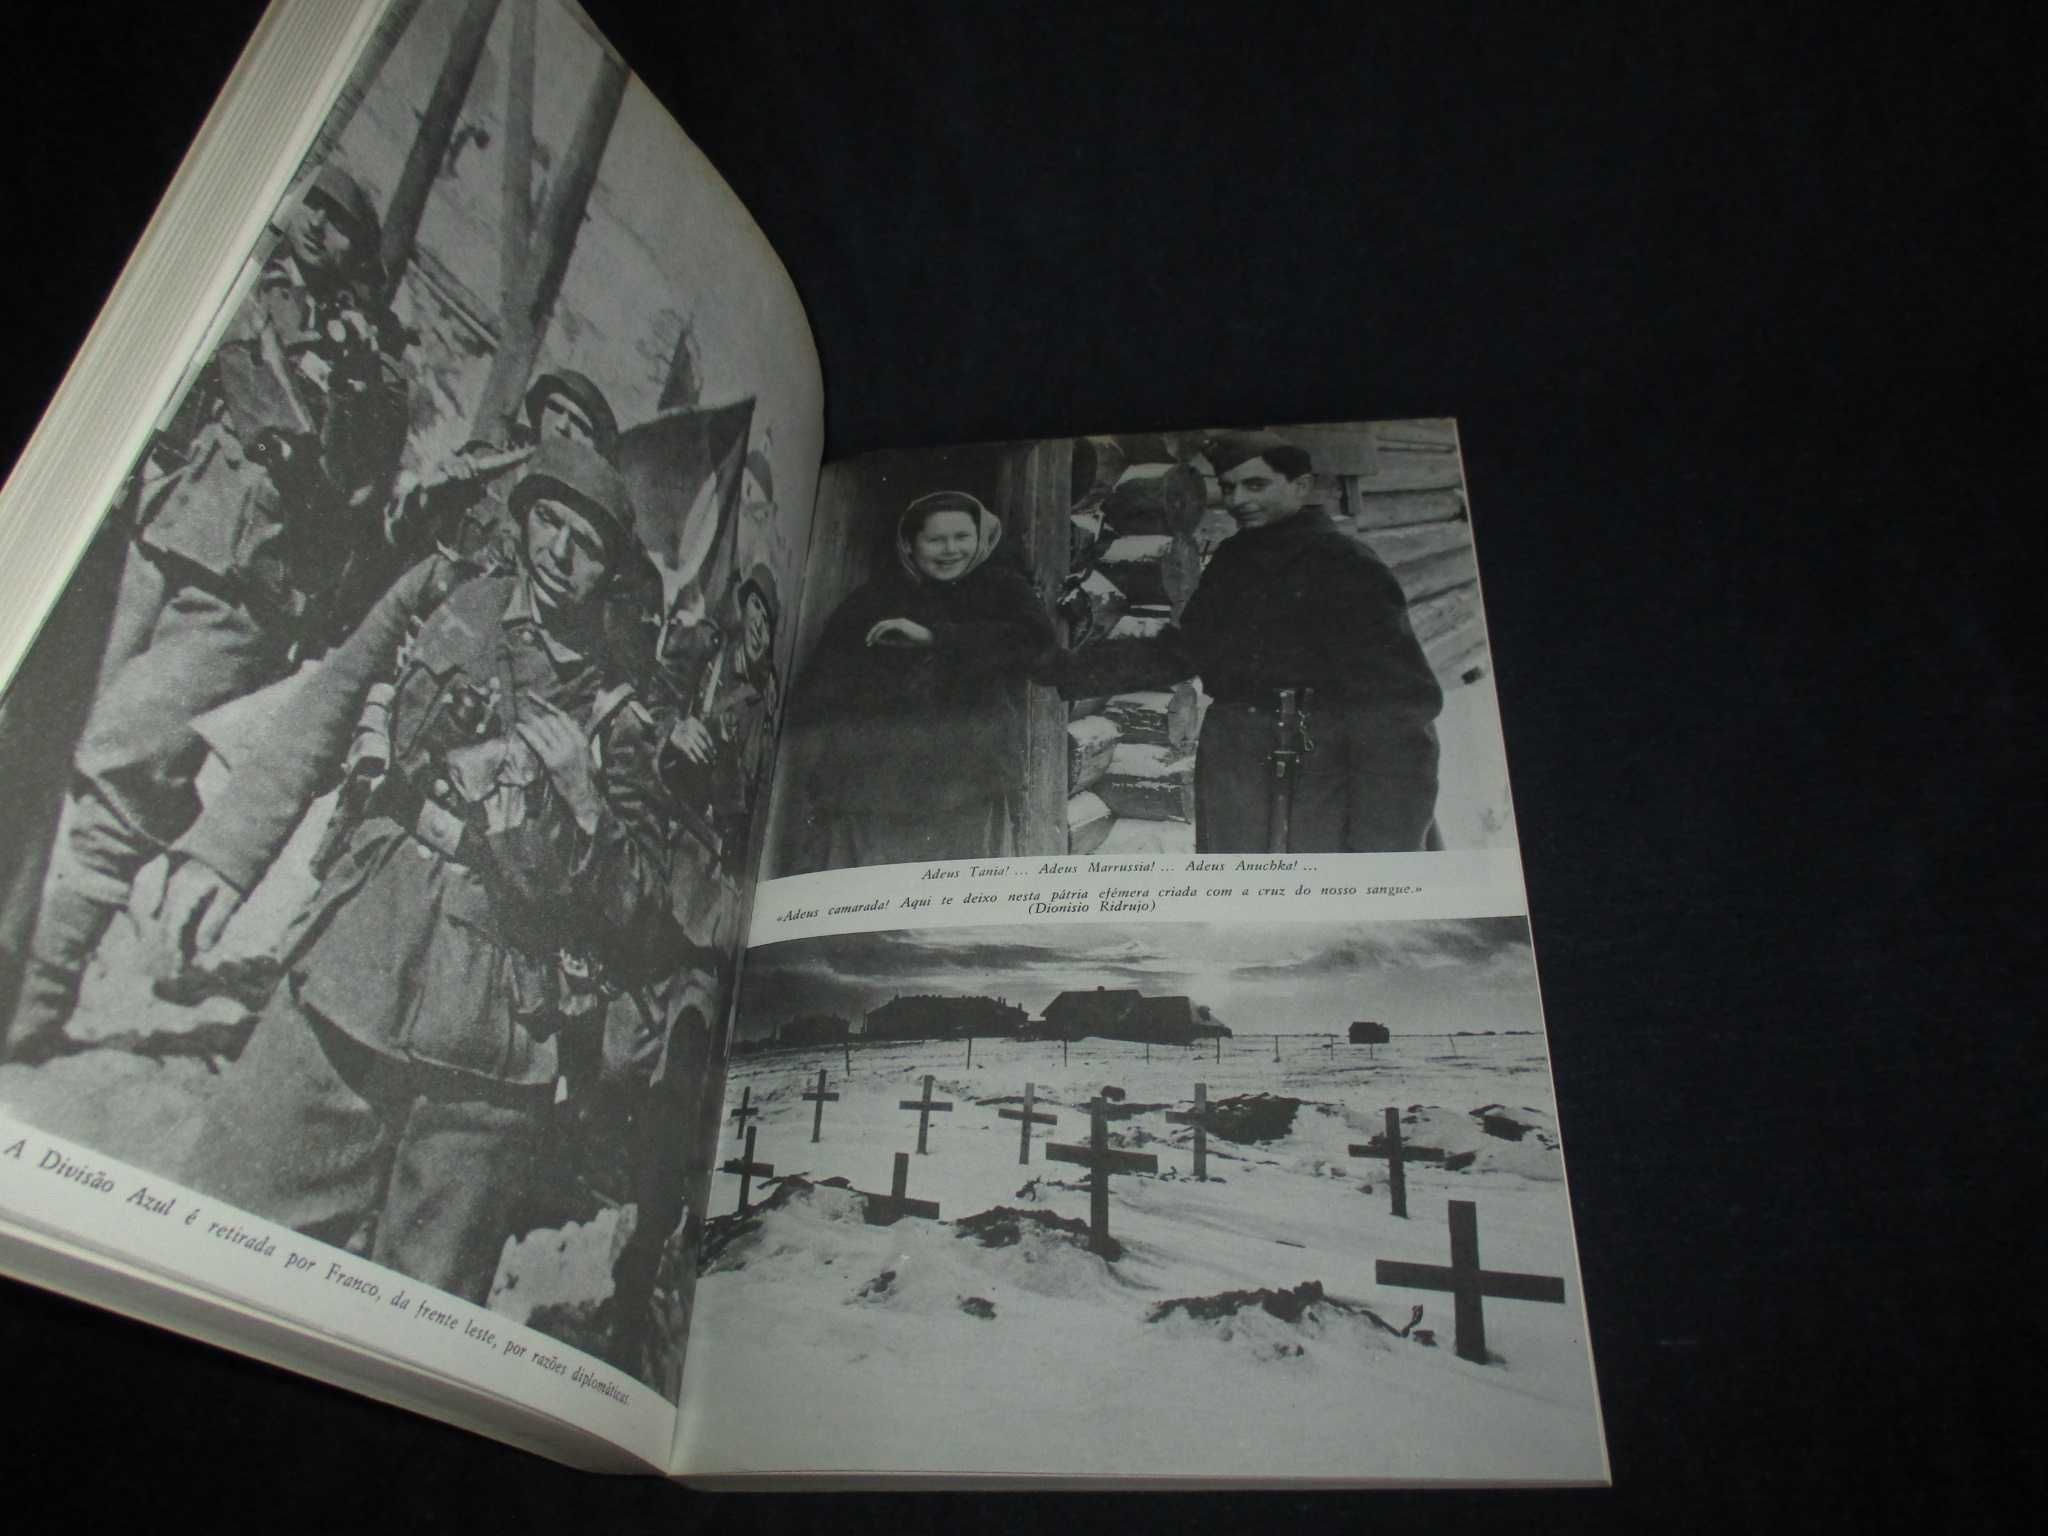 Livro A Divisão Azul Cruzada Espanhola de Leninegrado ao Gulag